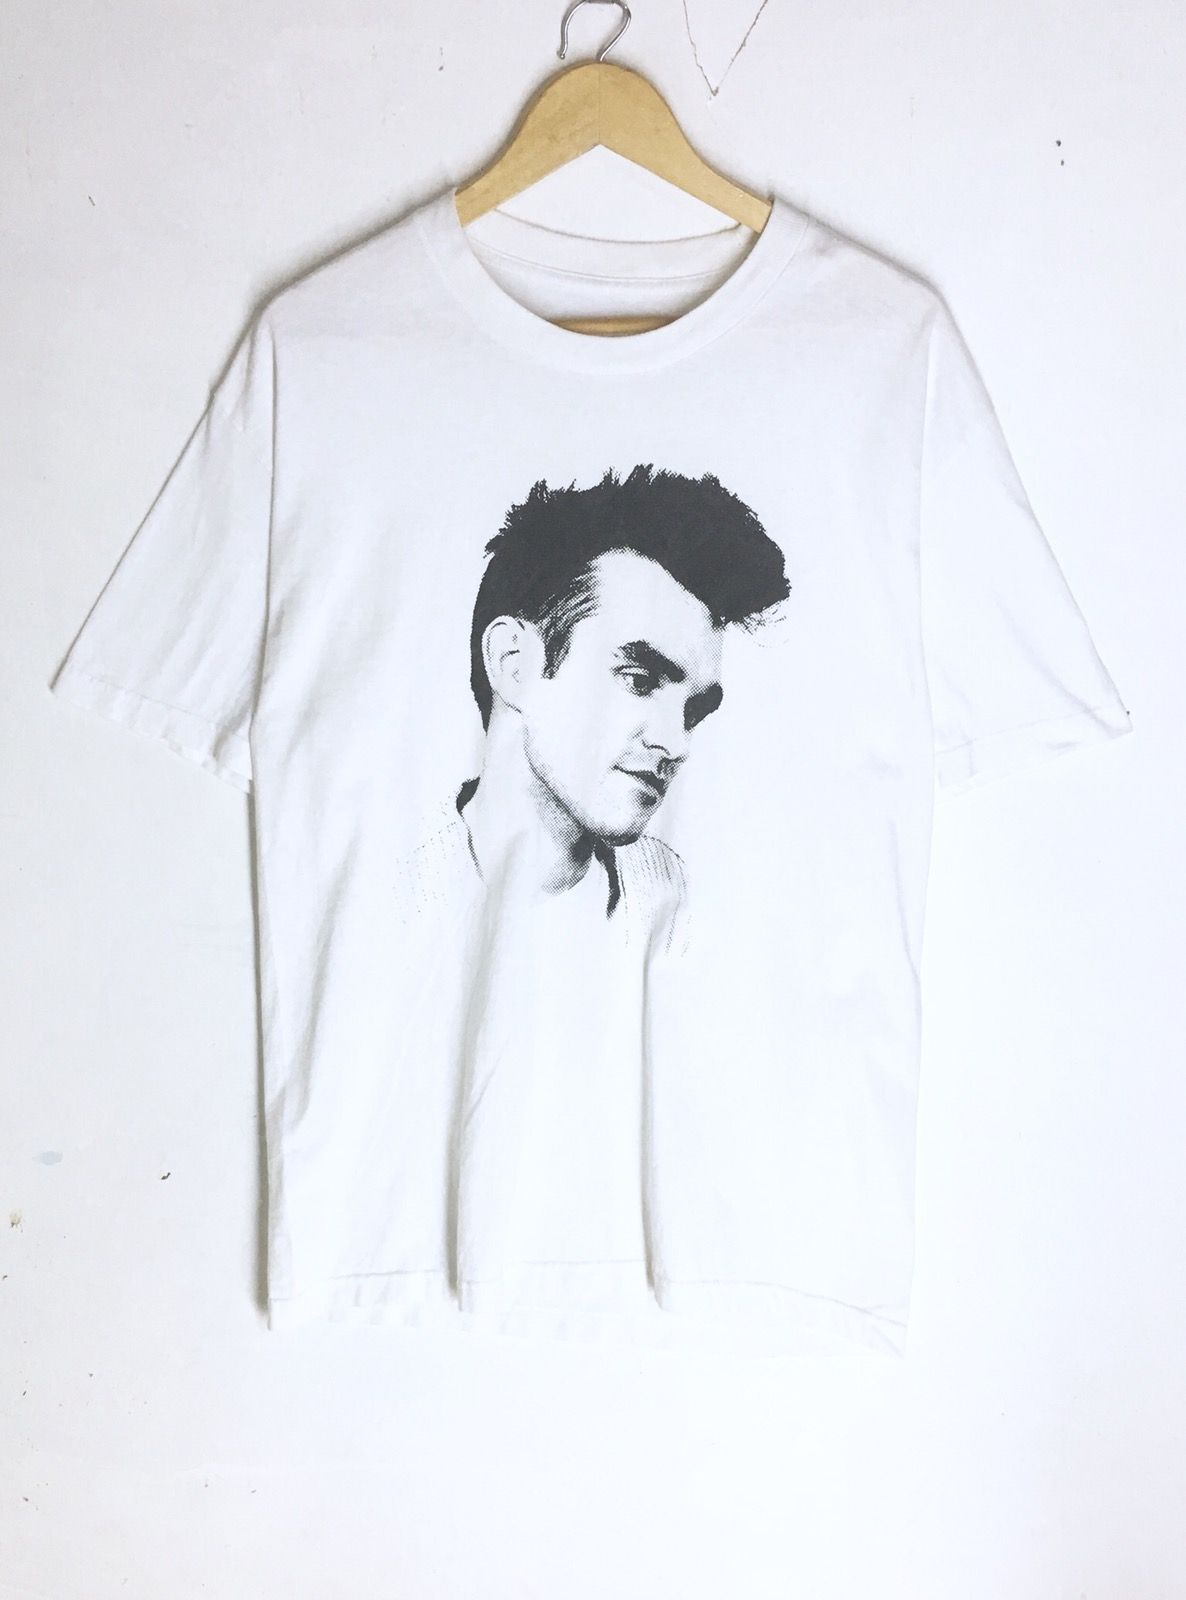 Vintage Rare Design Vintage Morrissey The Smith T-shirt 2000s Size US M / EU 48-50 / 2 - 1 Preview